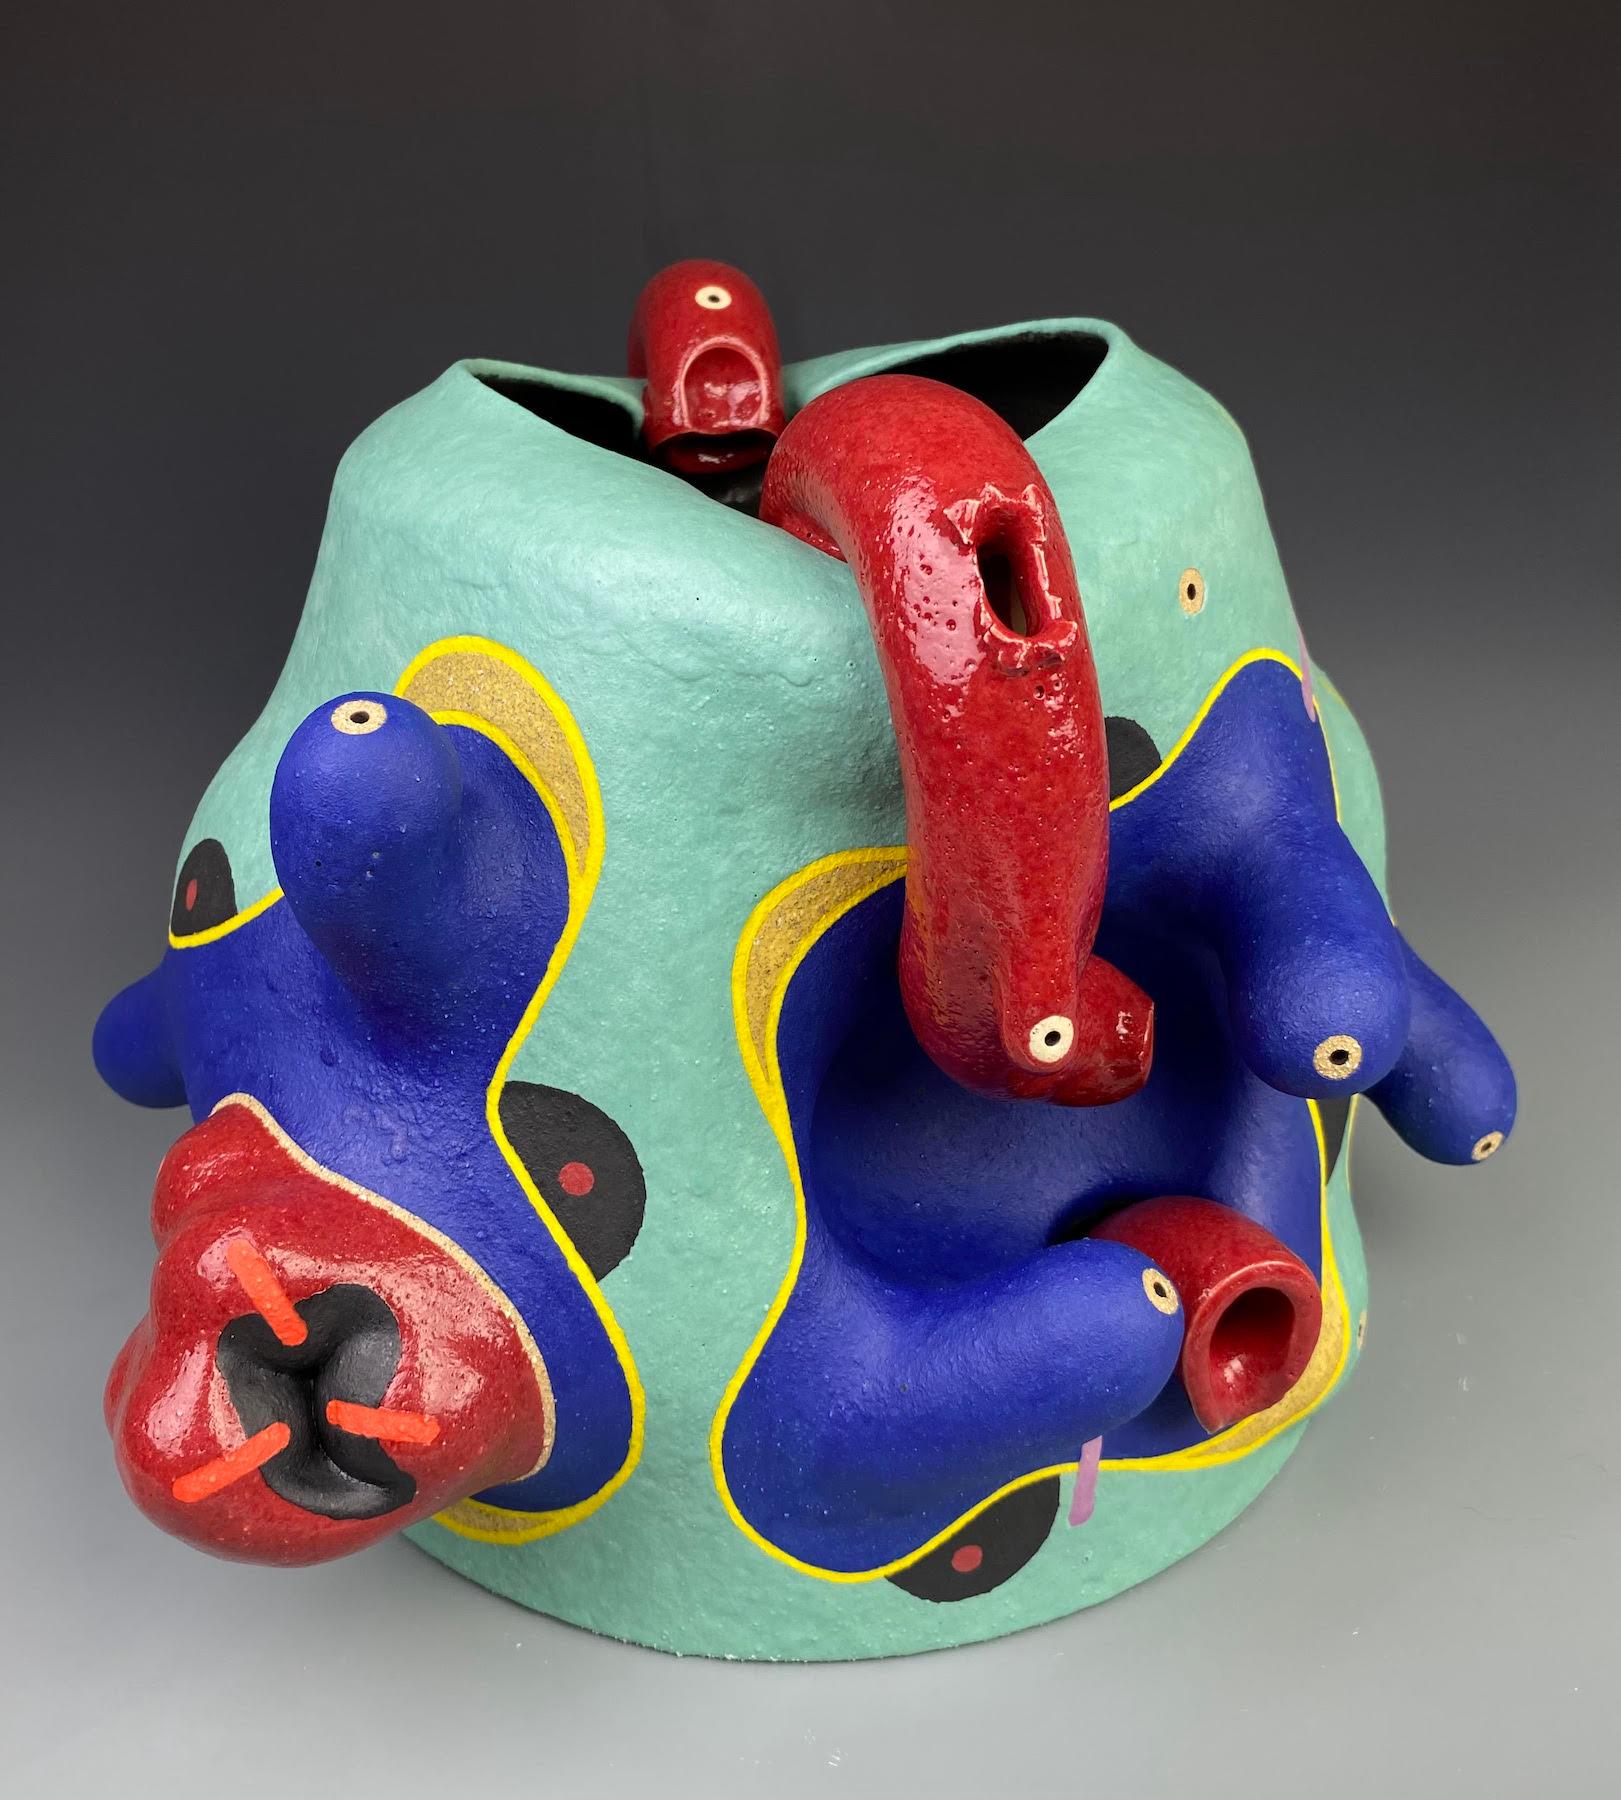 José Sierra est un artiste autodidacte et céramiste, né à Mérida, au Venezuela, en 1975. Son travail s'inspire de son  ainsi que l'art préhispanique, la poterie d'Asie de l'Est et le design contemporain. Ses œuvres regorgent de couleurs sursaturées